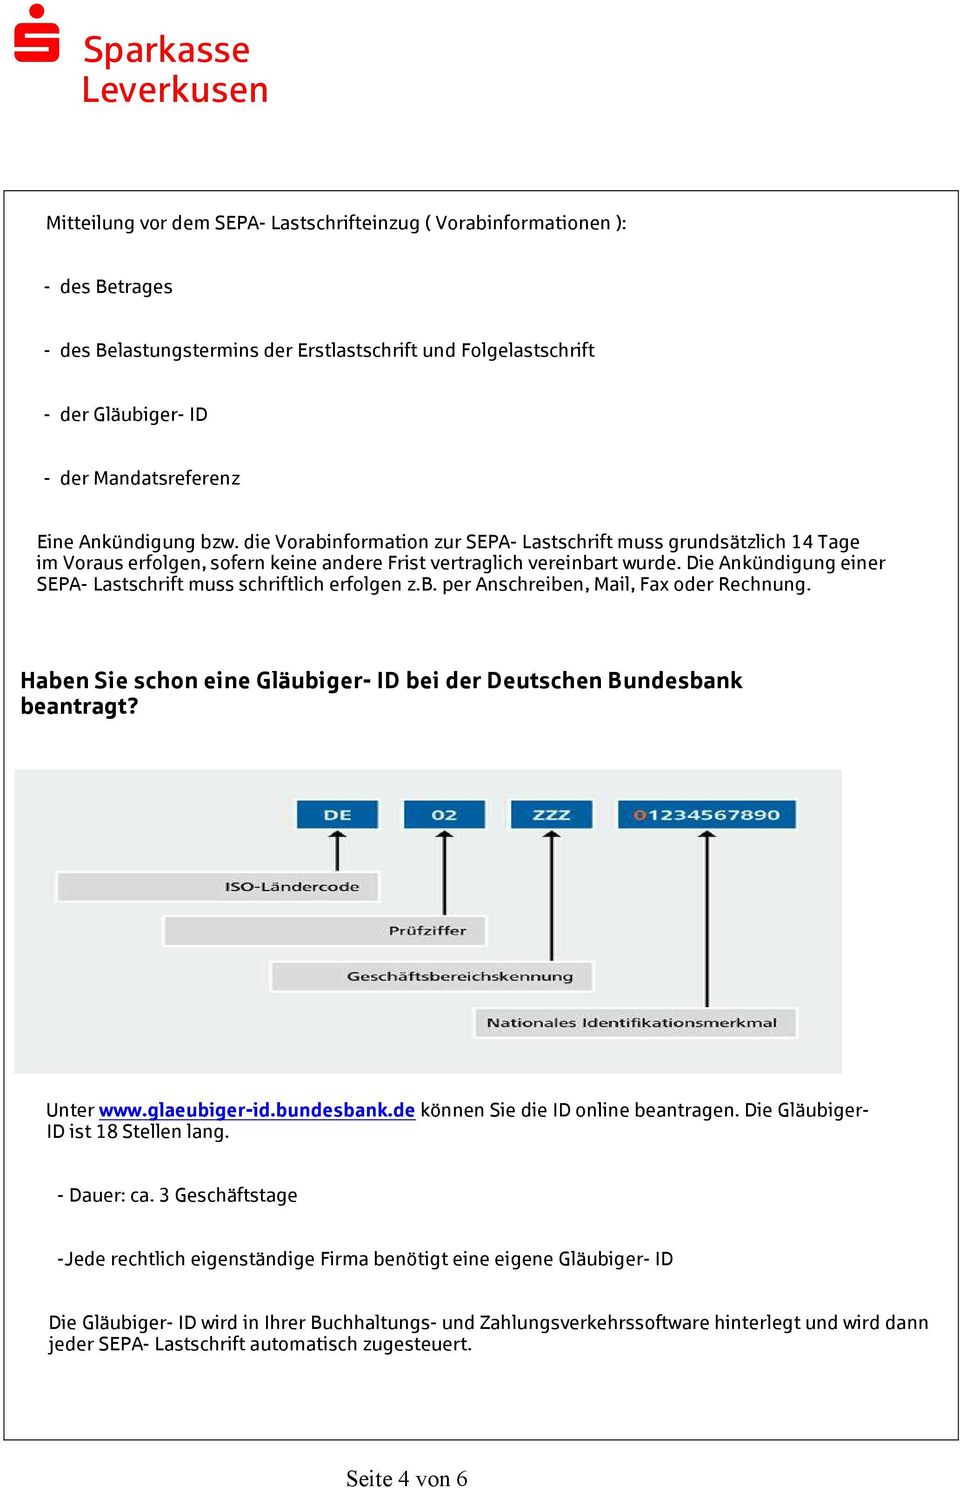 Die Ankündigung einer SEPA- Lastschrift muss schriftlich erfolgen z.b. per Anschreiben, Mail, Fax oder Rechnung. Haben Sie schon eine Gläubiger- ID bei der Deutschen Bundesbank beantragt? Unter www.